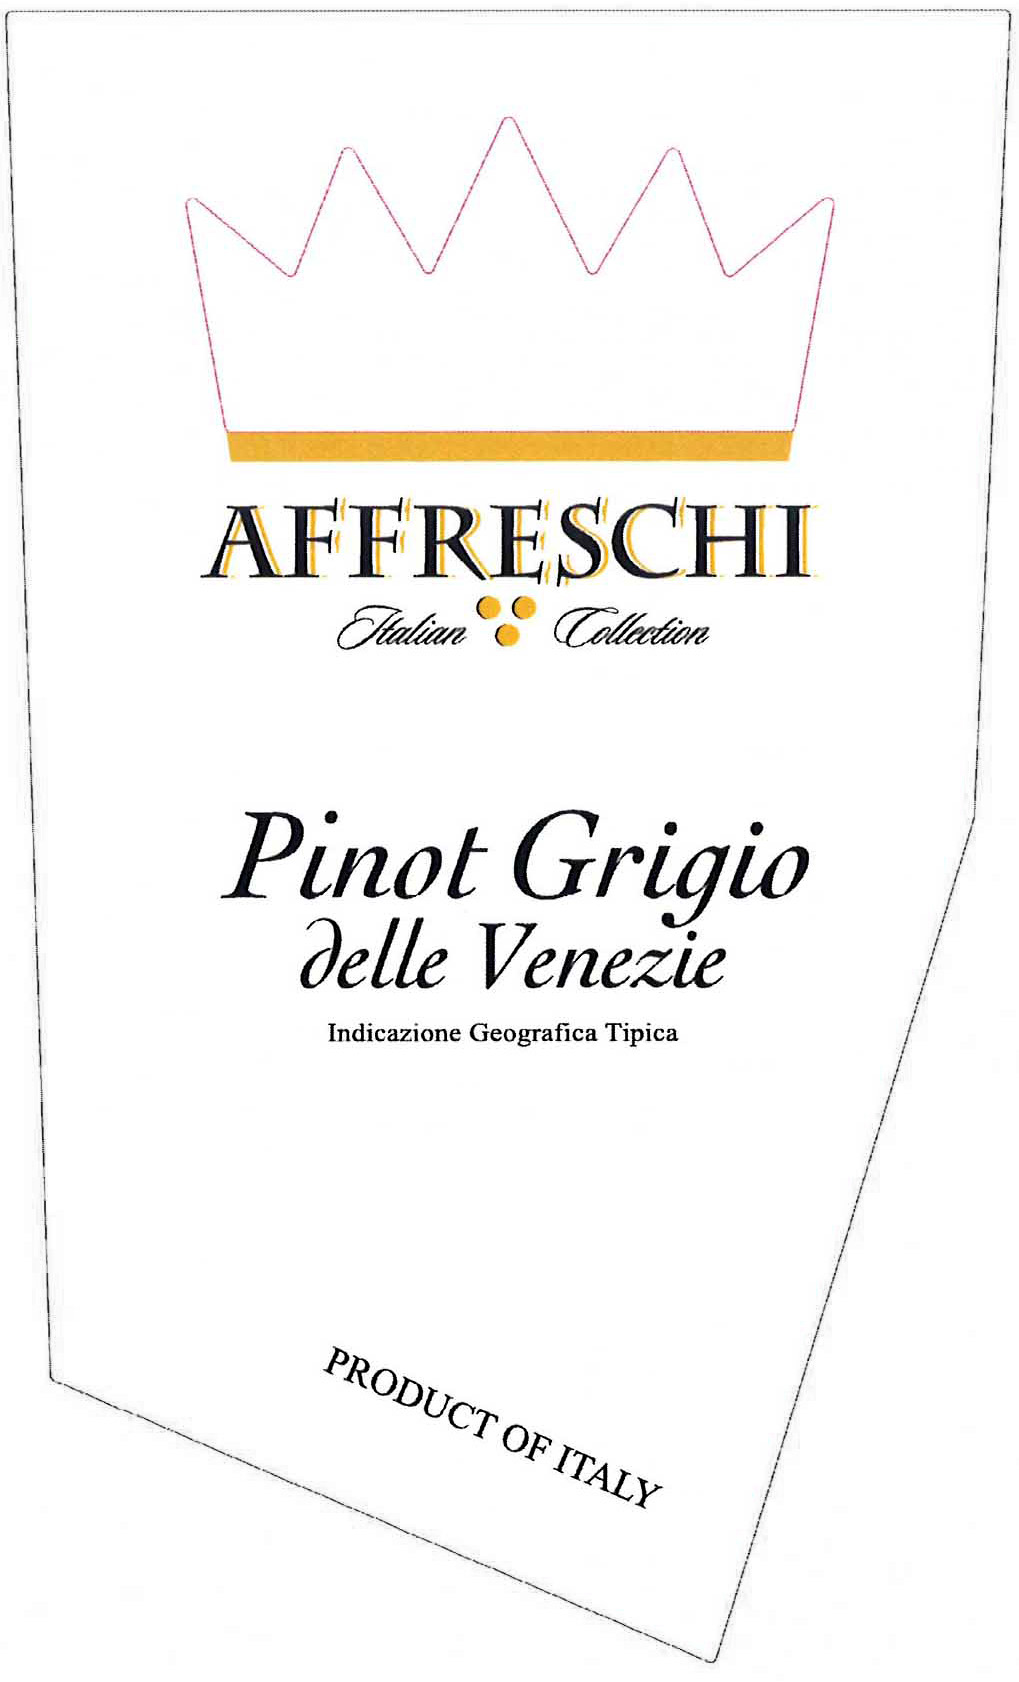 Affreschi - Pinot Grigio label